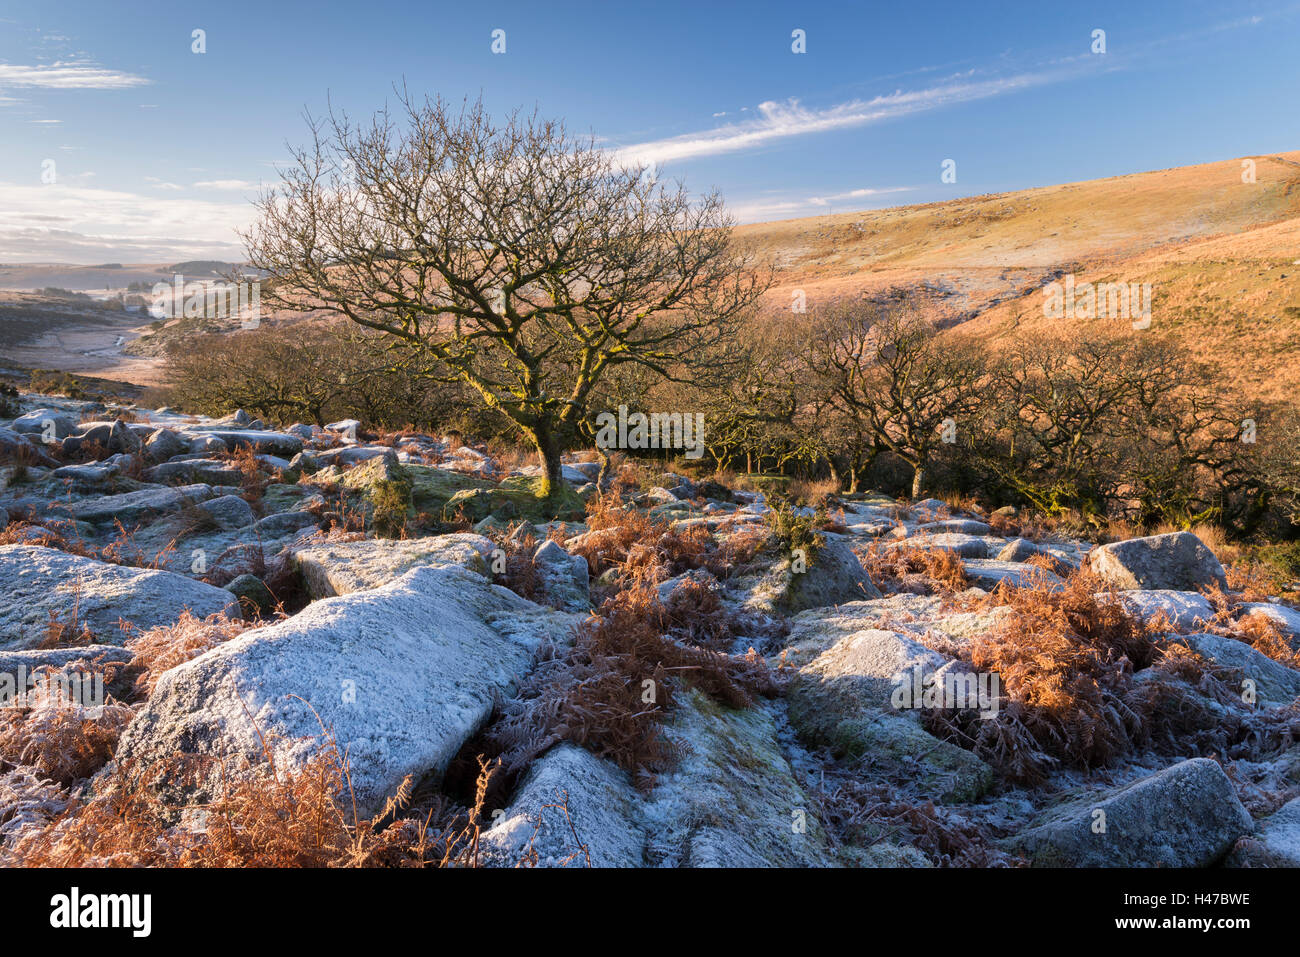 Lande givrée à la périphérie de Wistman's Wood, Dartmoor, dans le Devon, Angleterre. Hiver (décembre) 2014. Banque D'Images